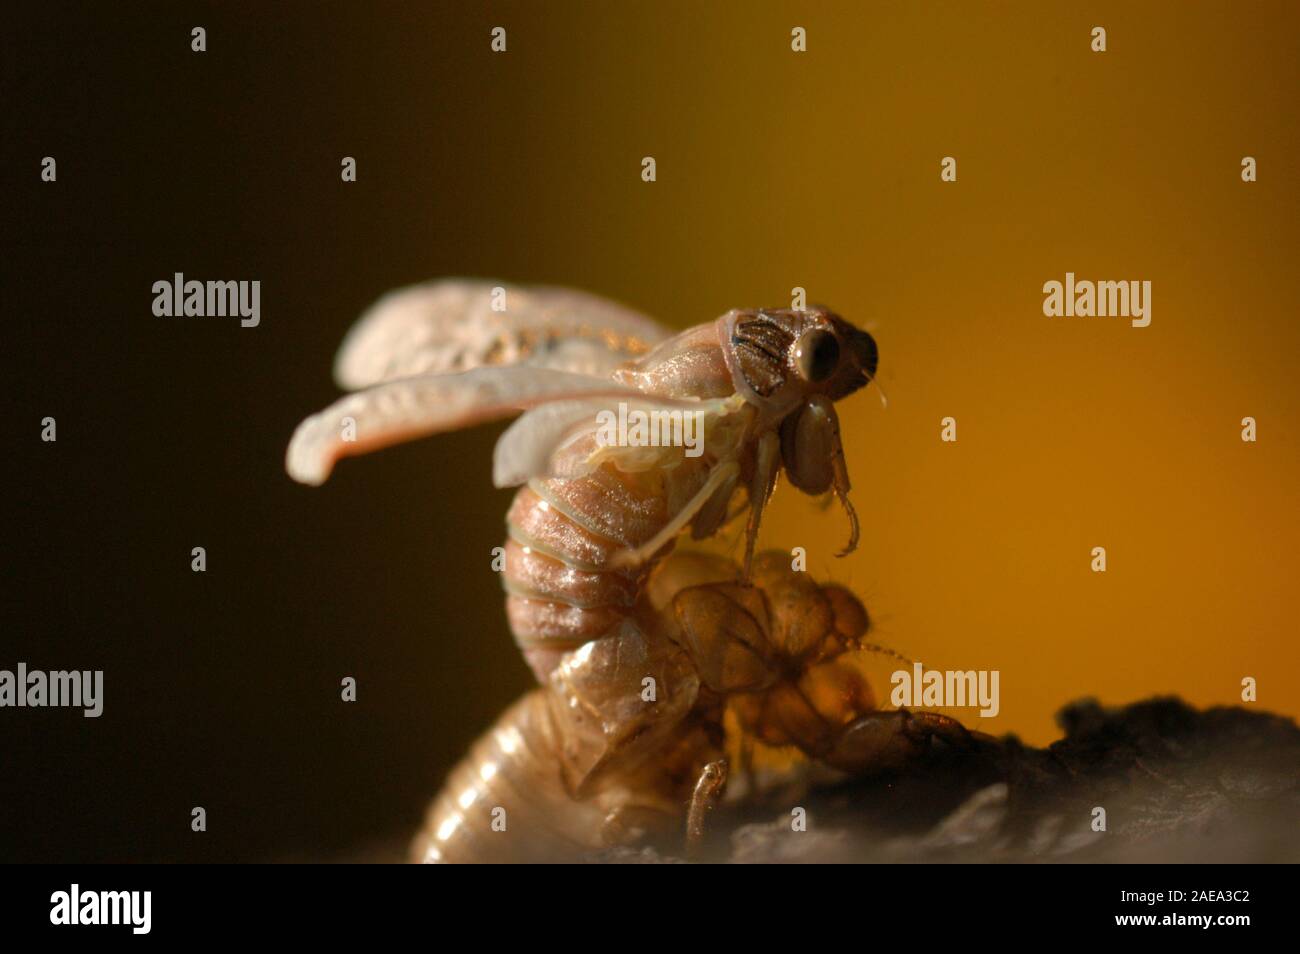 Die zikade bricht durch deren Larven shell Als ausgewachsenen Erwachsenen zu entwickeln. Australien verfügt über mehr als 200 Arten der Zikaden. Stockfoto